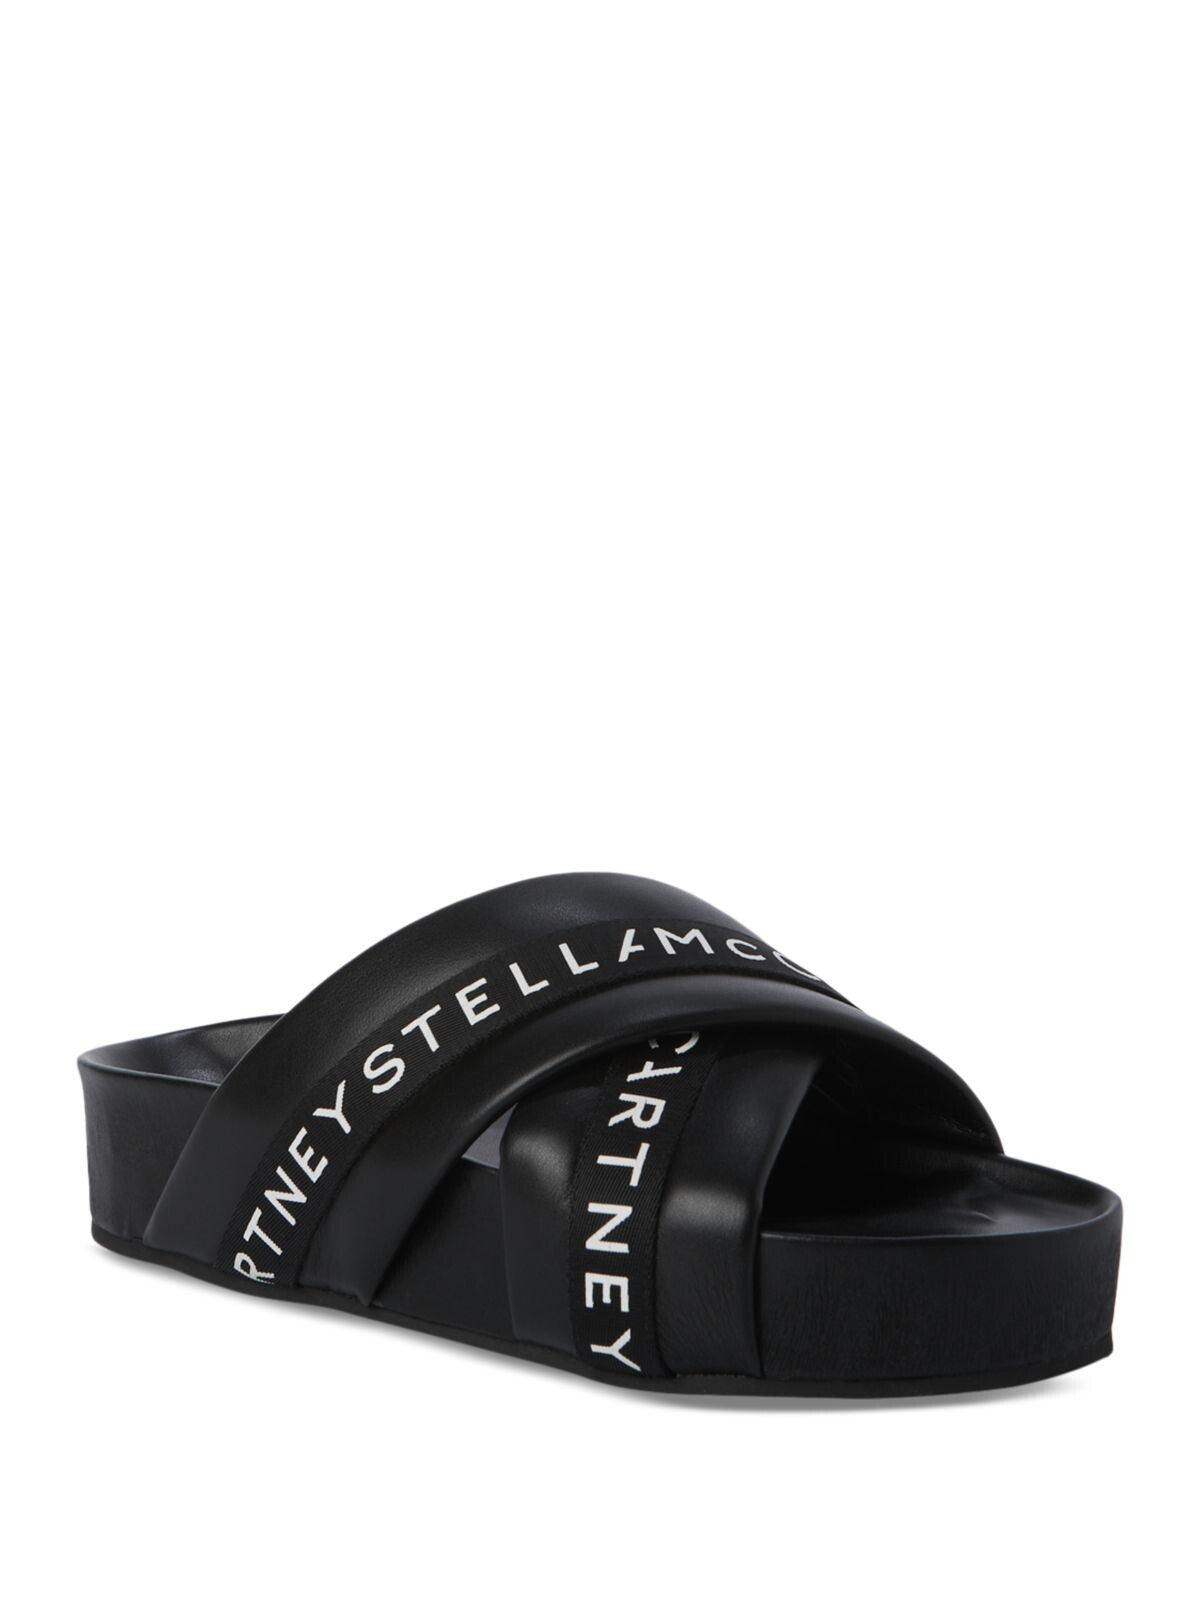 STELLAMCCARTNEY Womens Black Contoured Footbed Vesta Round Toe Platform Slip On Slide Sandals Shoes 37